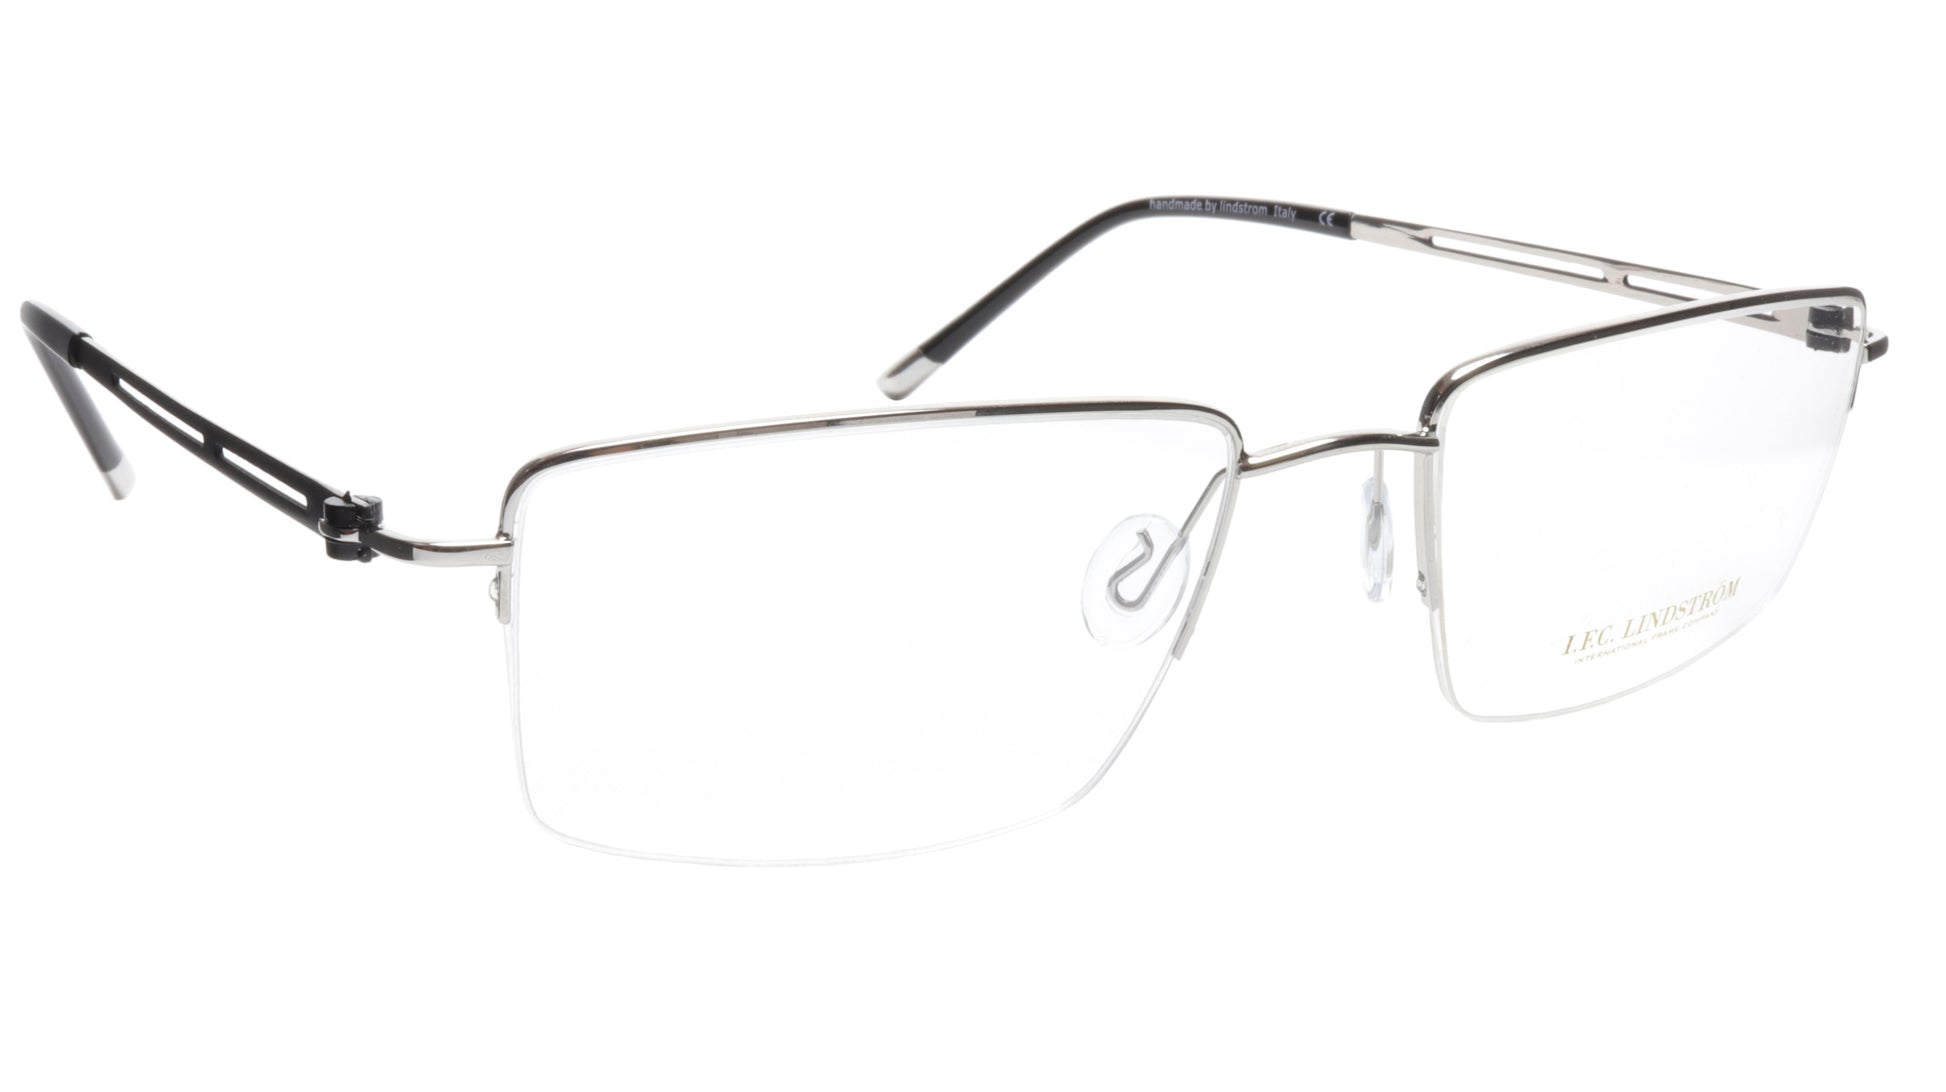 LINDSTROM L-104 C2 Eyeglasses Frame Metal Silver Black Italy Made 56-19-143, 36 - Frame Bay